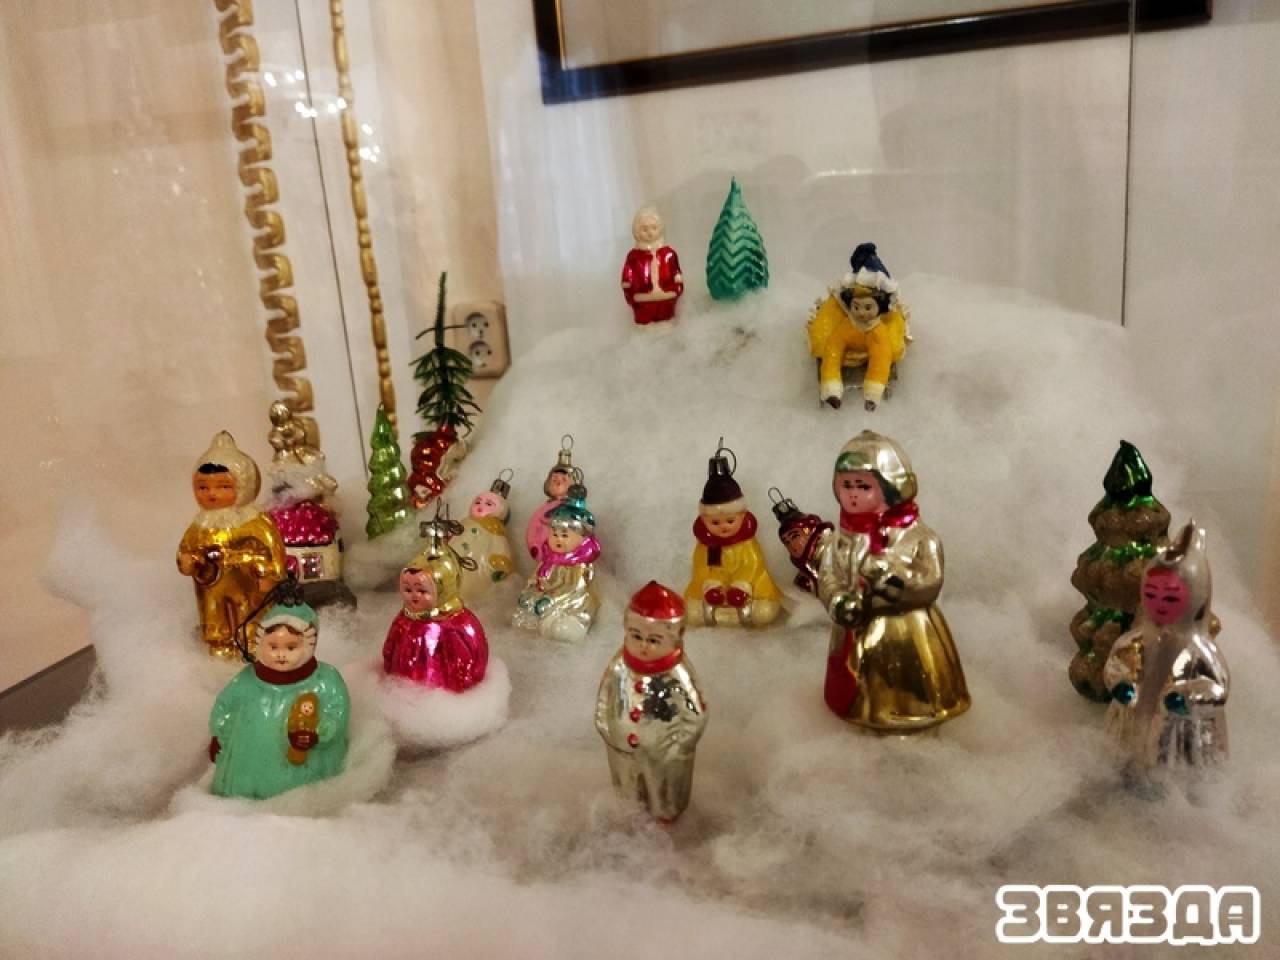 Вместо ангелов — красноармейцы: в Гродно открылась выставка елочных игрушек 30-70-х годов